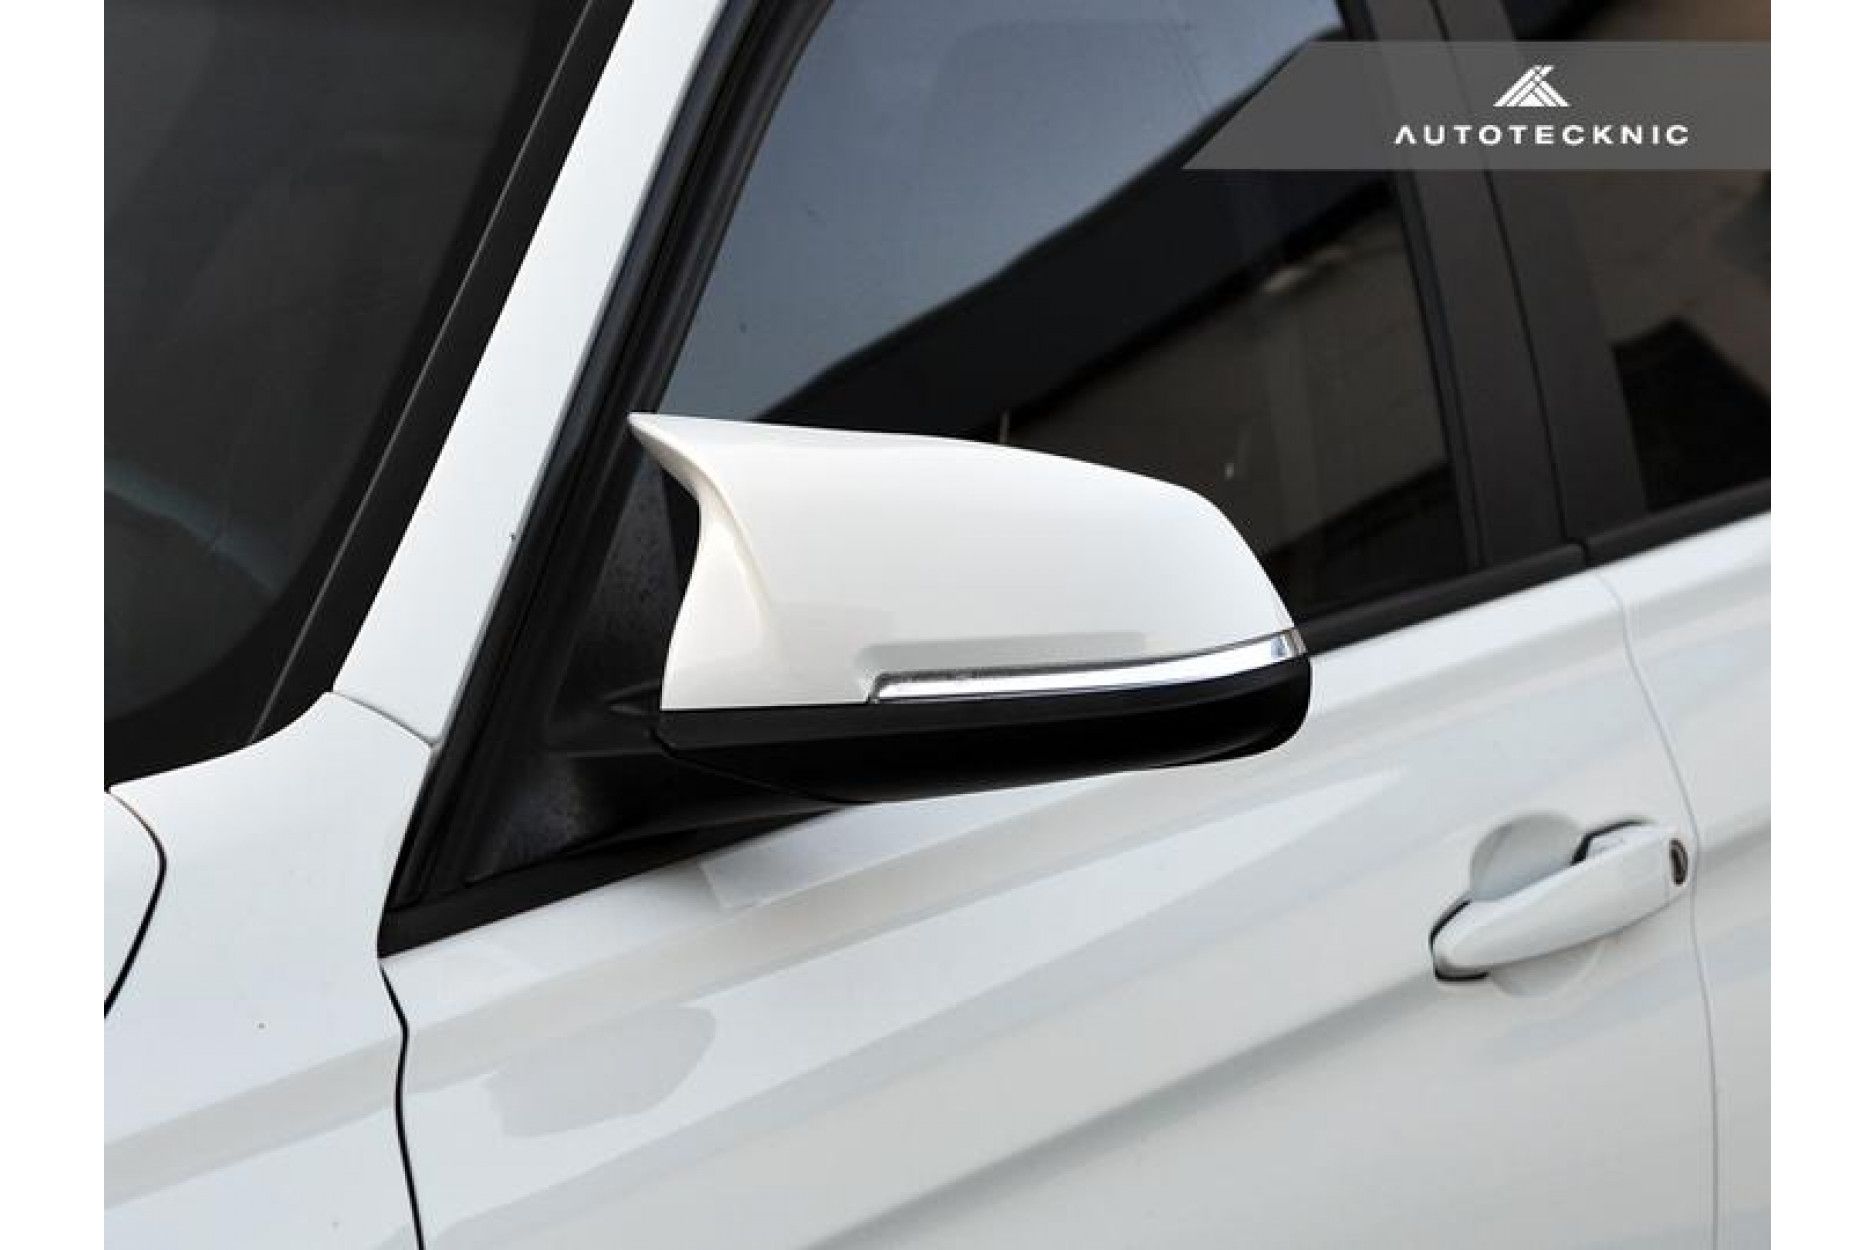 Autotecknic ABS Spiegelkappen für BMW 2er, 3er, 4er F22, F87, F30, F32